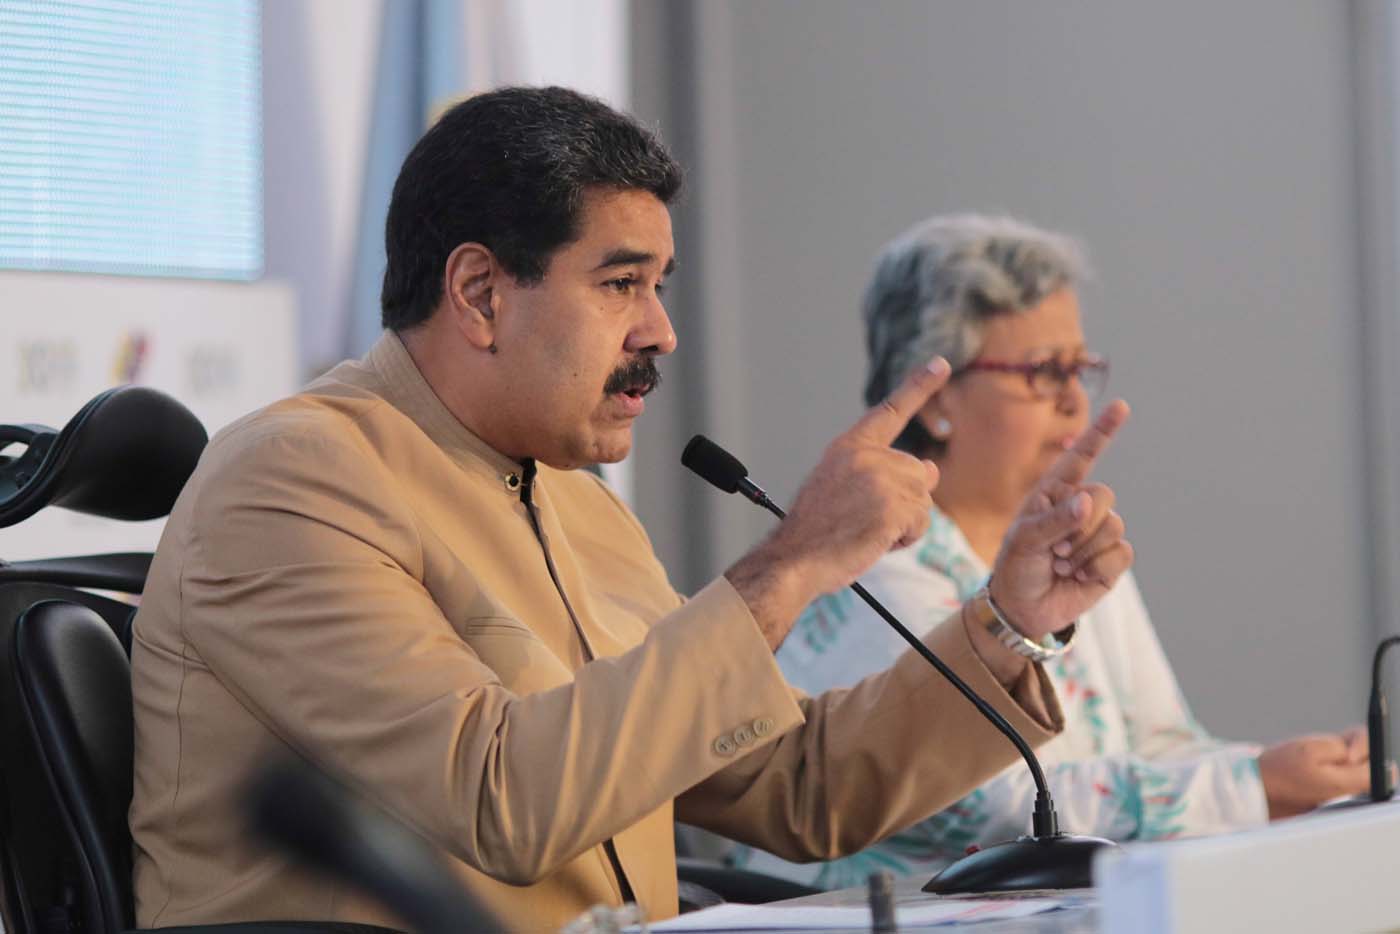 Empleados públicos son obligados a asistir a la inscripción de candidatura de Maduro (FOTO)